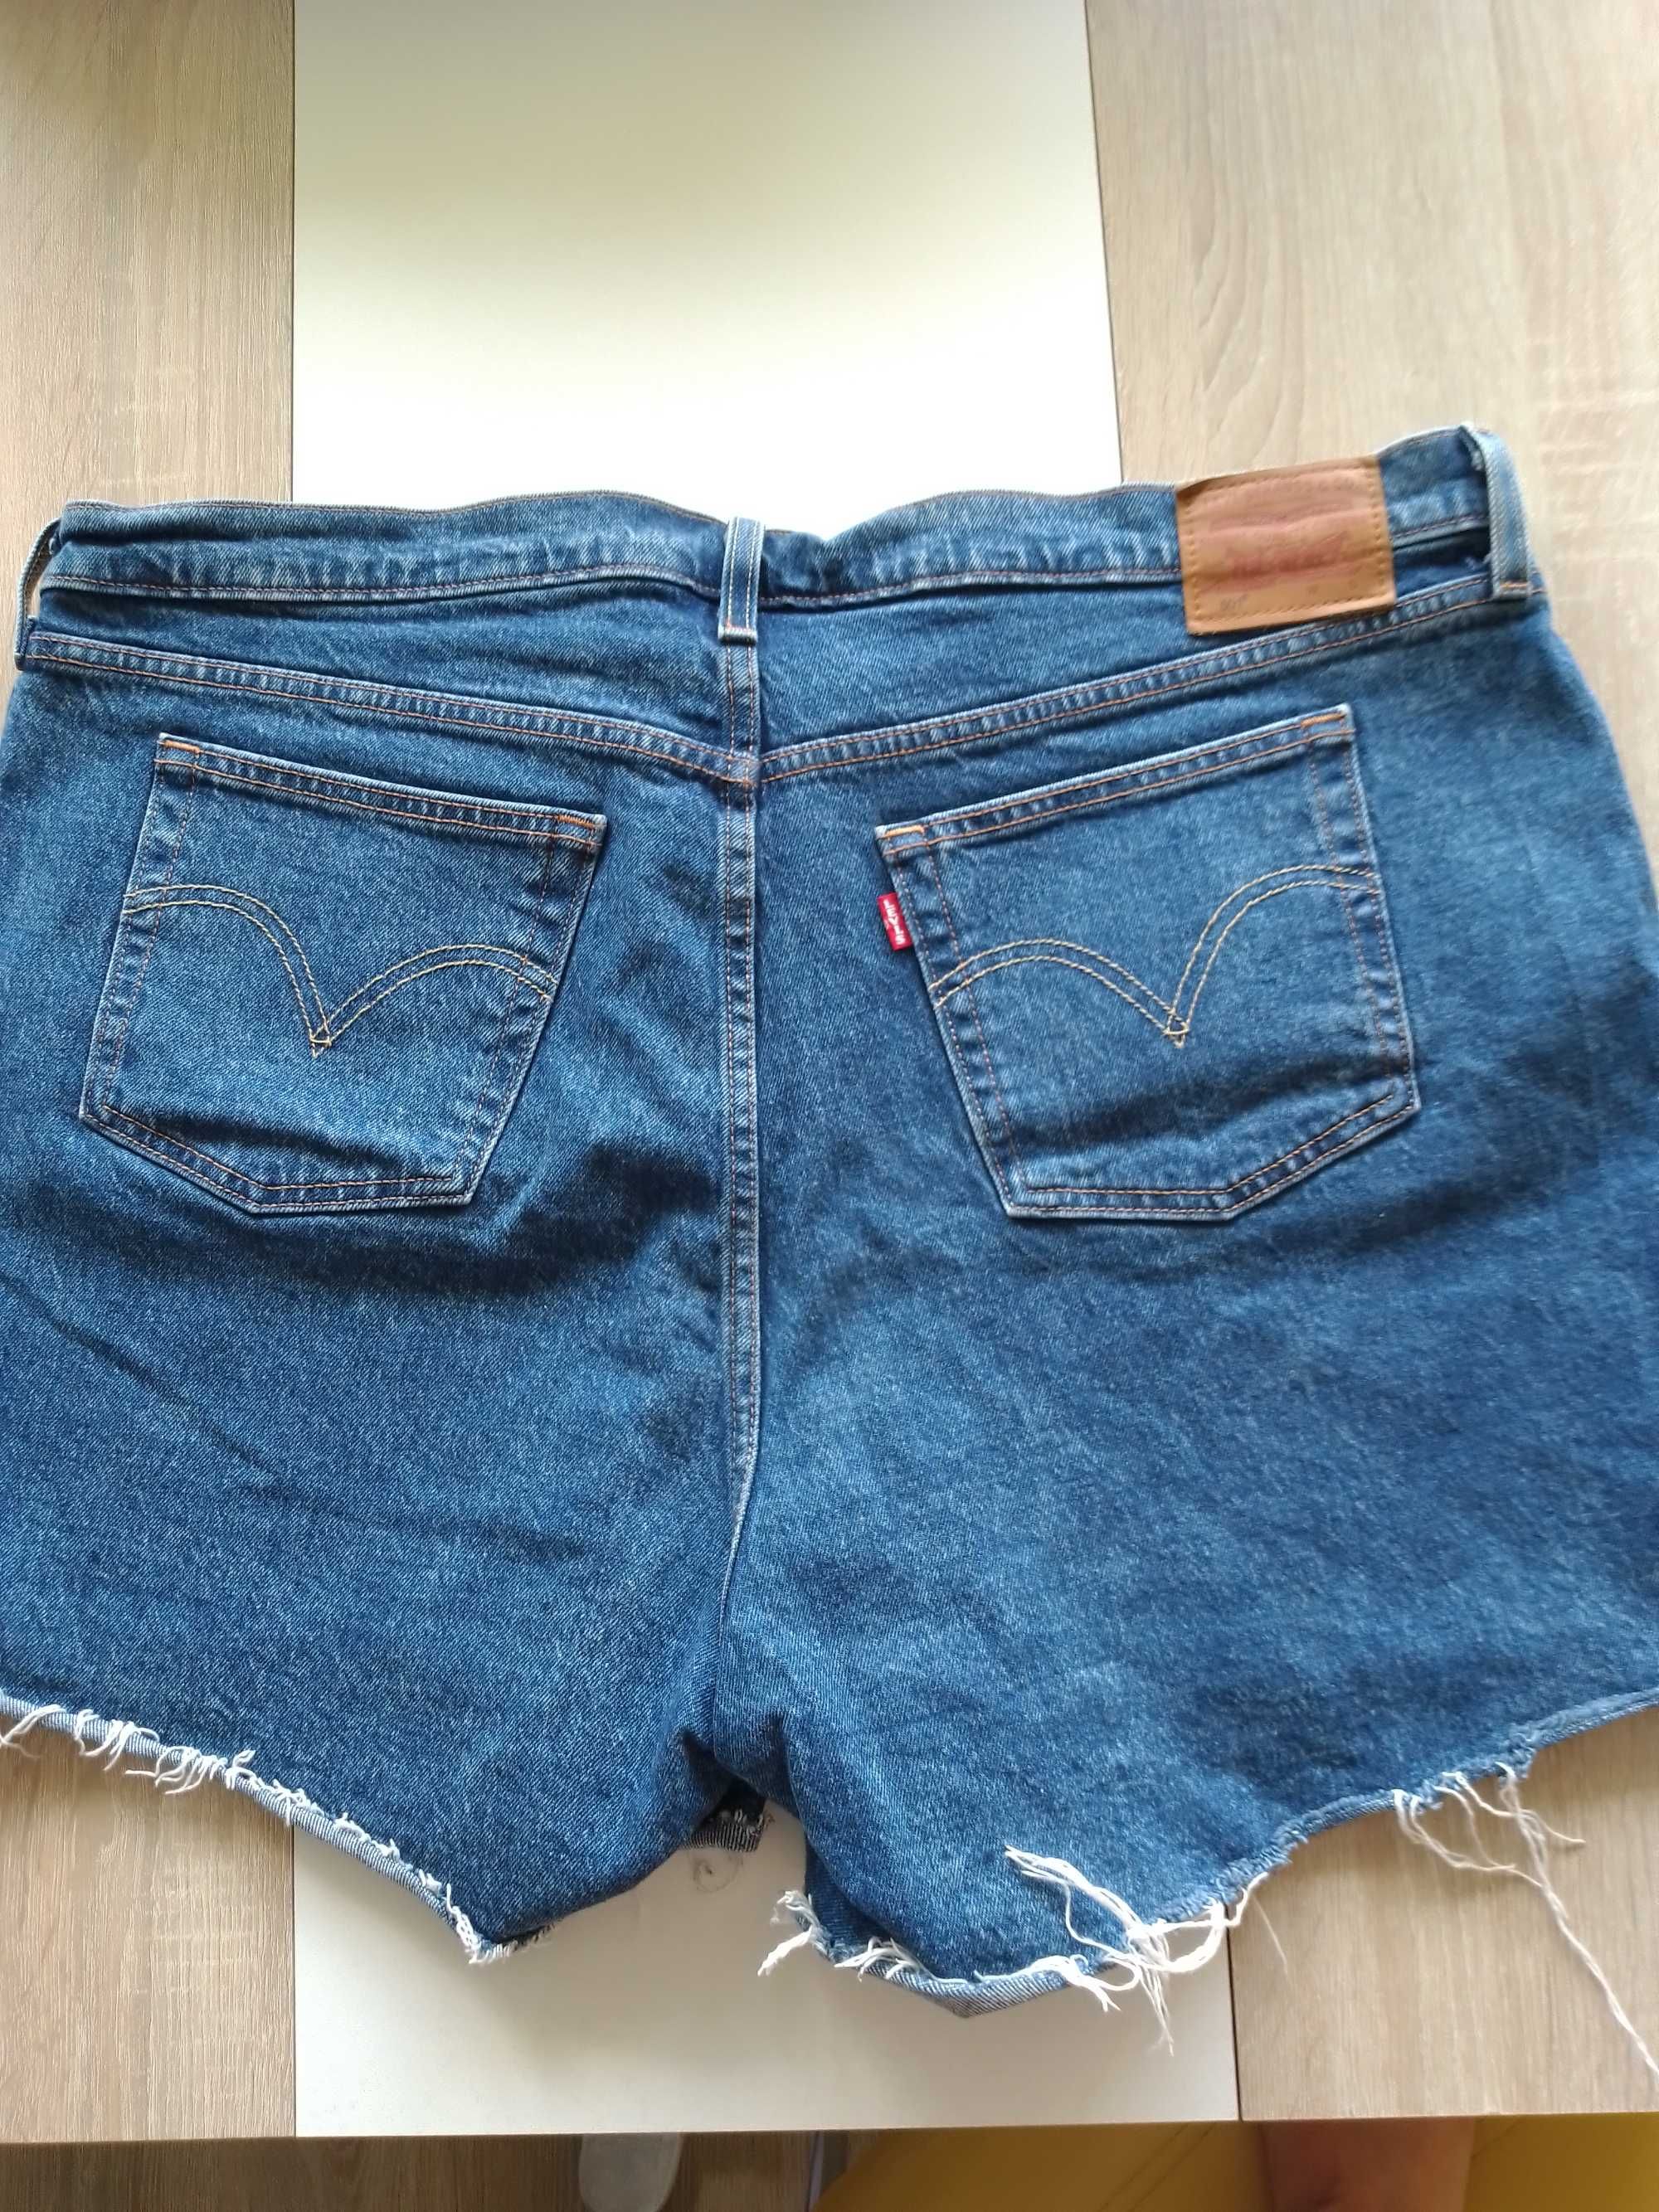 Spodnie krotkie damskie Levi's jeans, rozmiar XL